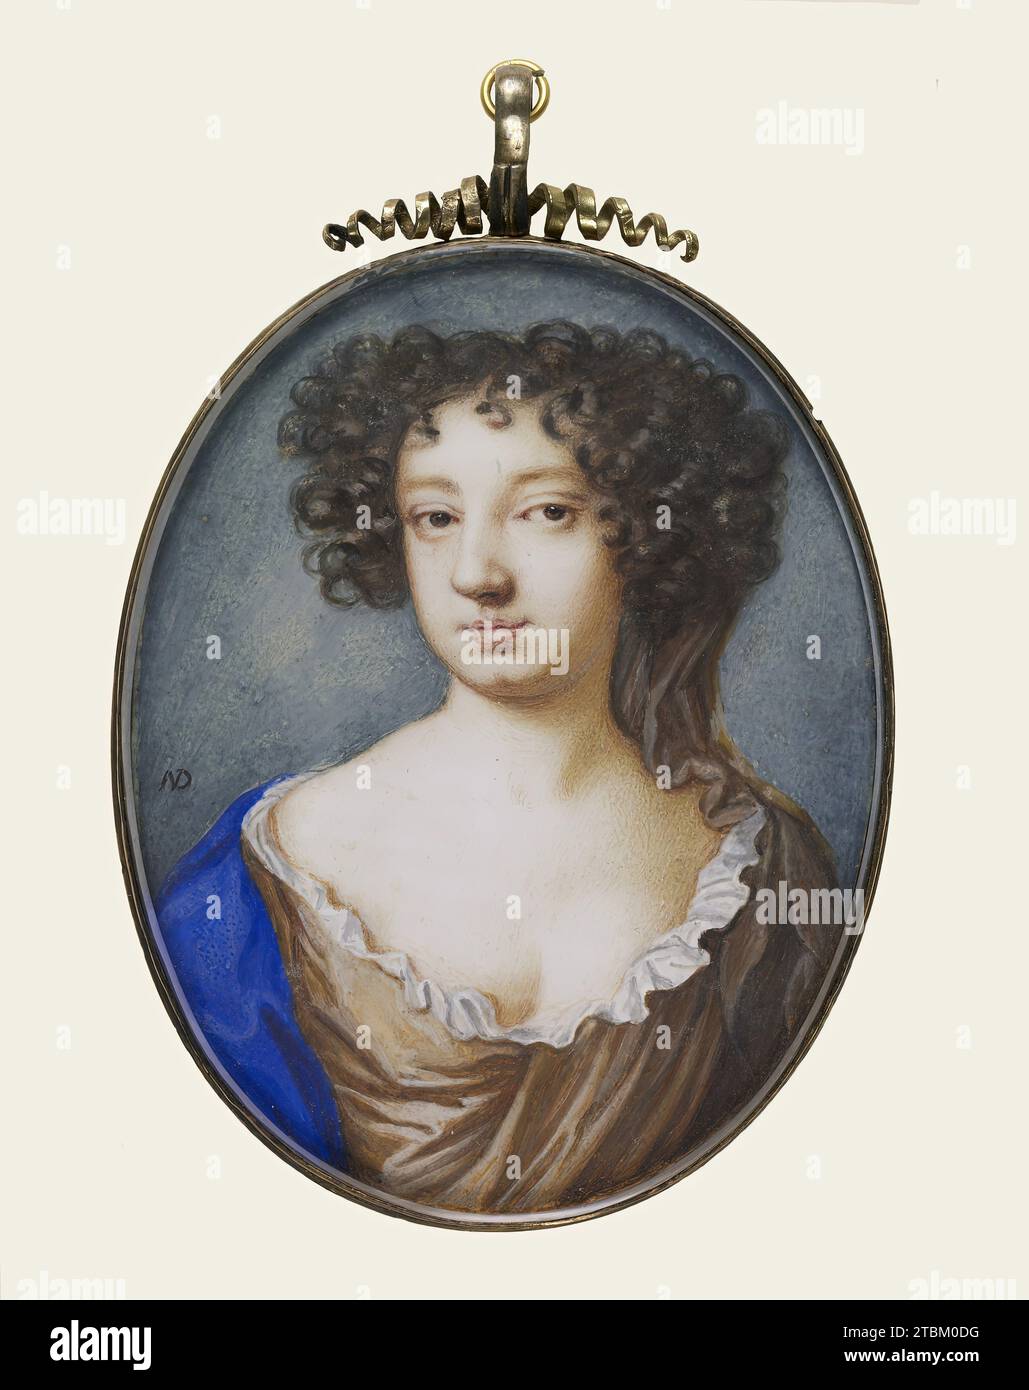 Catherine, Gräfin von Chesterfield, (1670-1679 ?). Porträt-Miniatur von Katherine Stanhope, die Gouvernante von König Karl I.’ Tochter Mary war und 1660 zur Gräfin von Chesterfield ernannt wurde. Sie war auch die erste Frau, die das Amt des Generalpostmeisters von England innehatte. Stockfoto